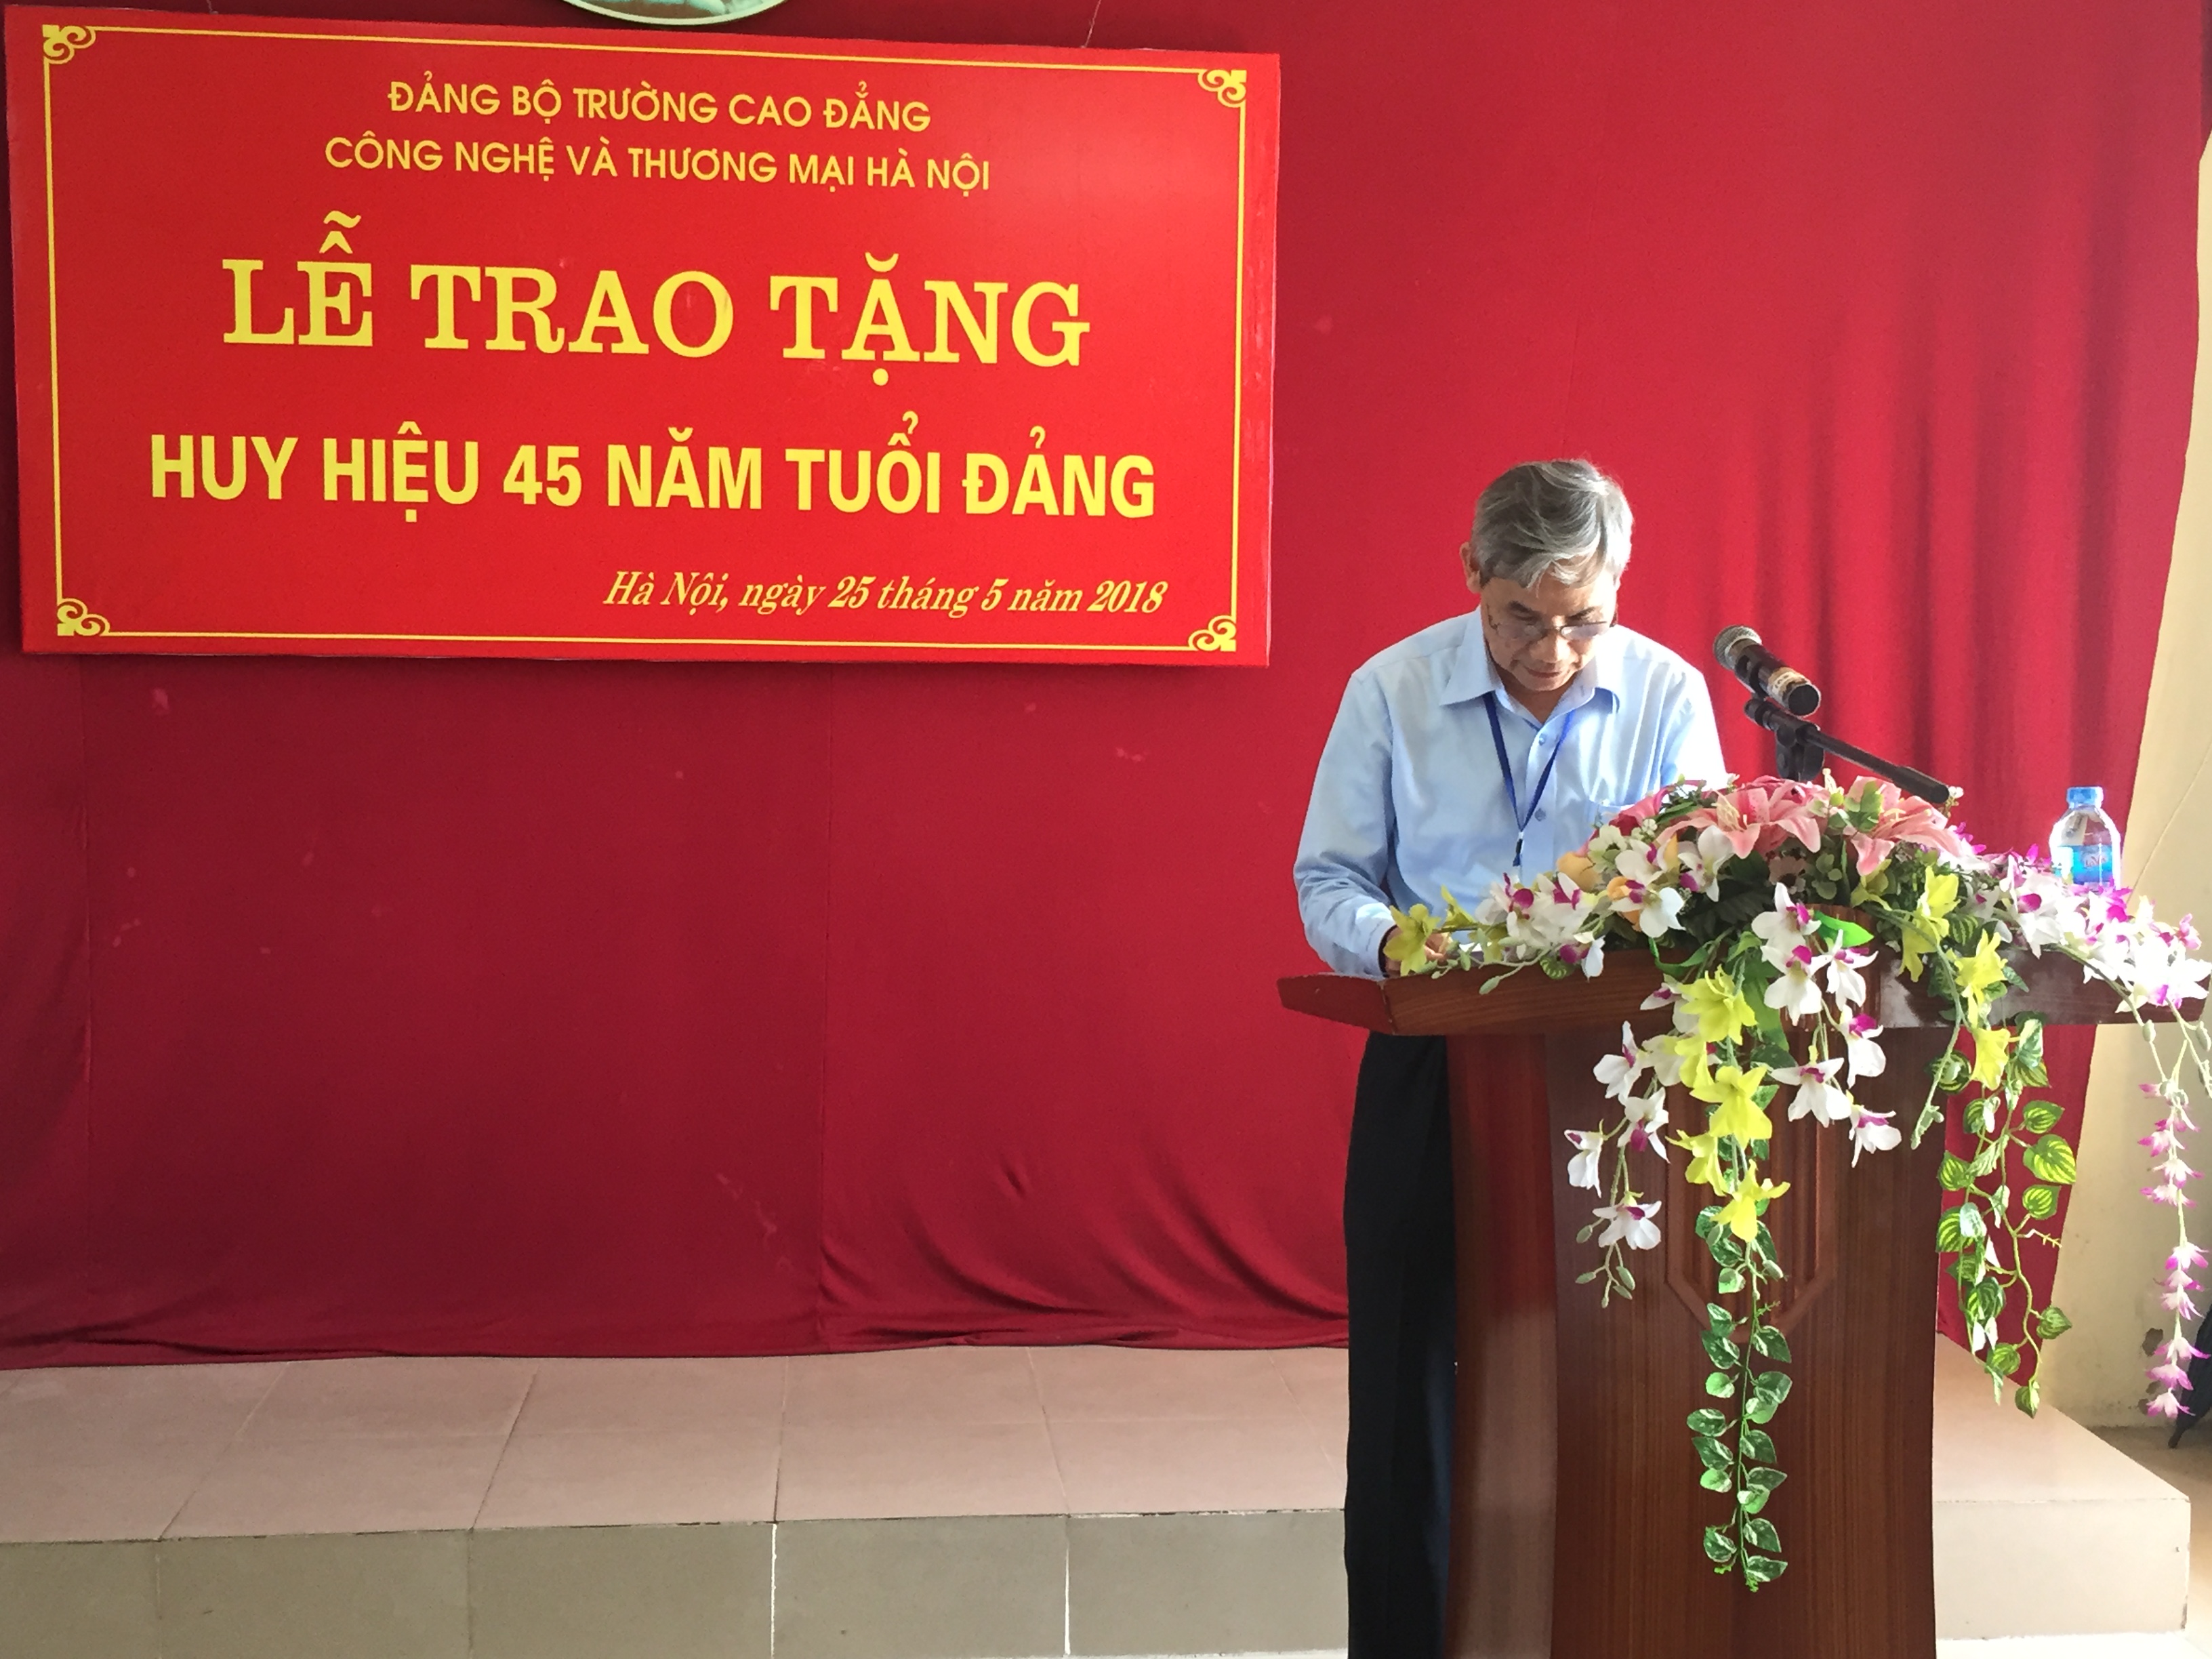 Đ/c Trần Hữu Thể - Bí thư Đảng ủy phát biểu chúc mừng đ/c Nguyễn Văn Phong tại Lễ trao tặng Huy hiệu 45 năm tuổi Đảng